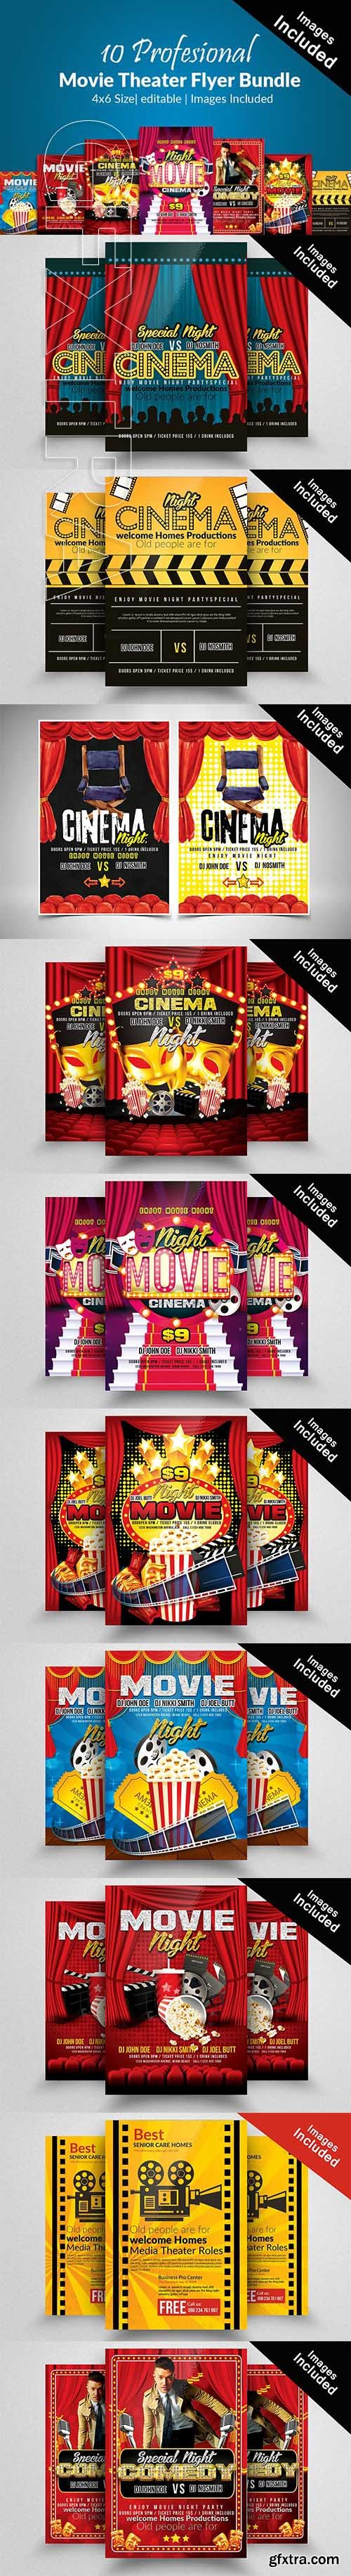 CreativeMarket - 10 Movie Theater Flyer Bundle Vol01 2110210